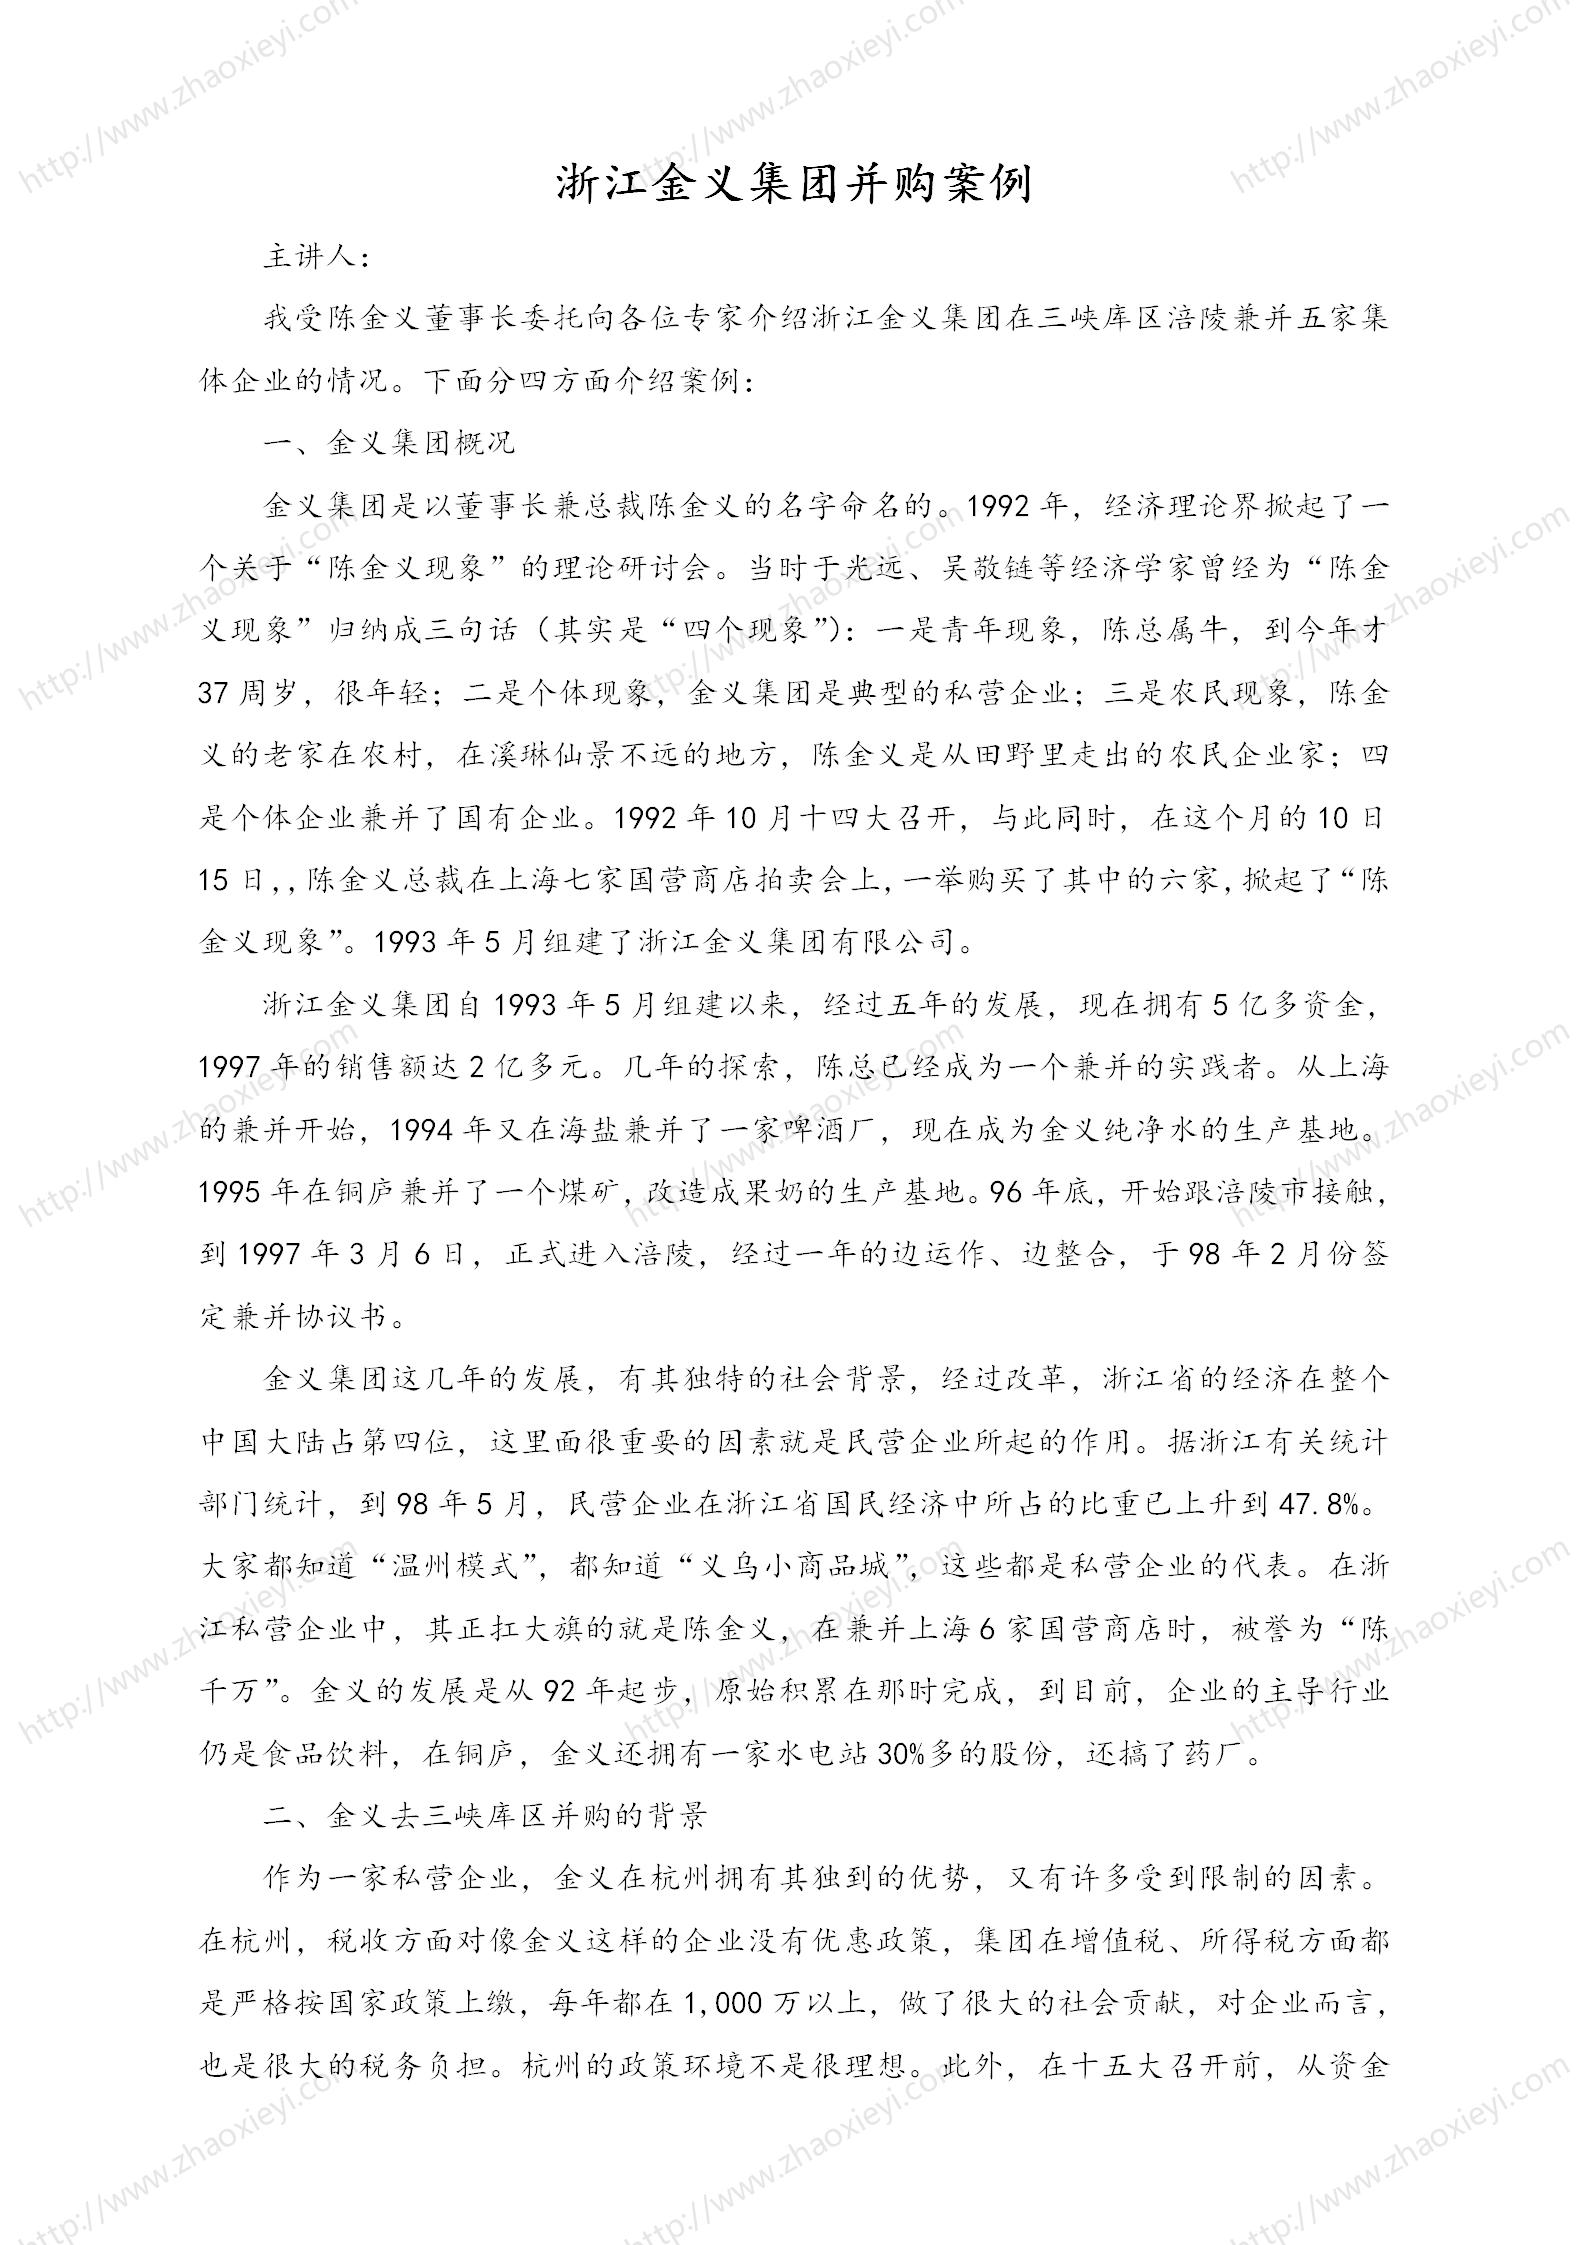 中国企业并购经典案例_134.jpg